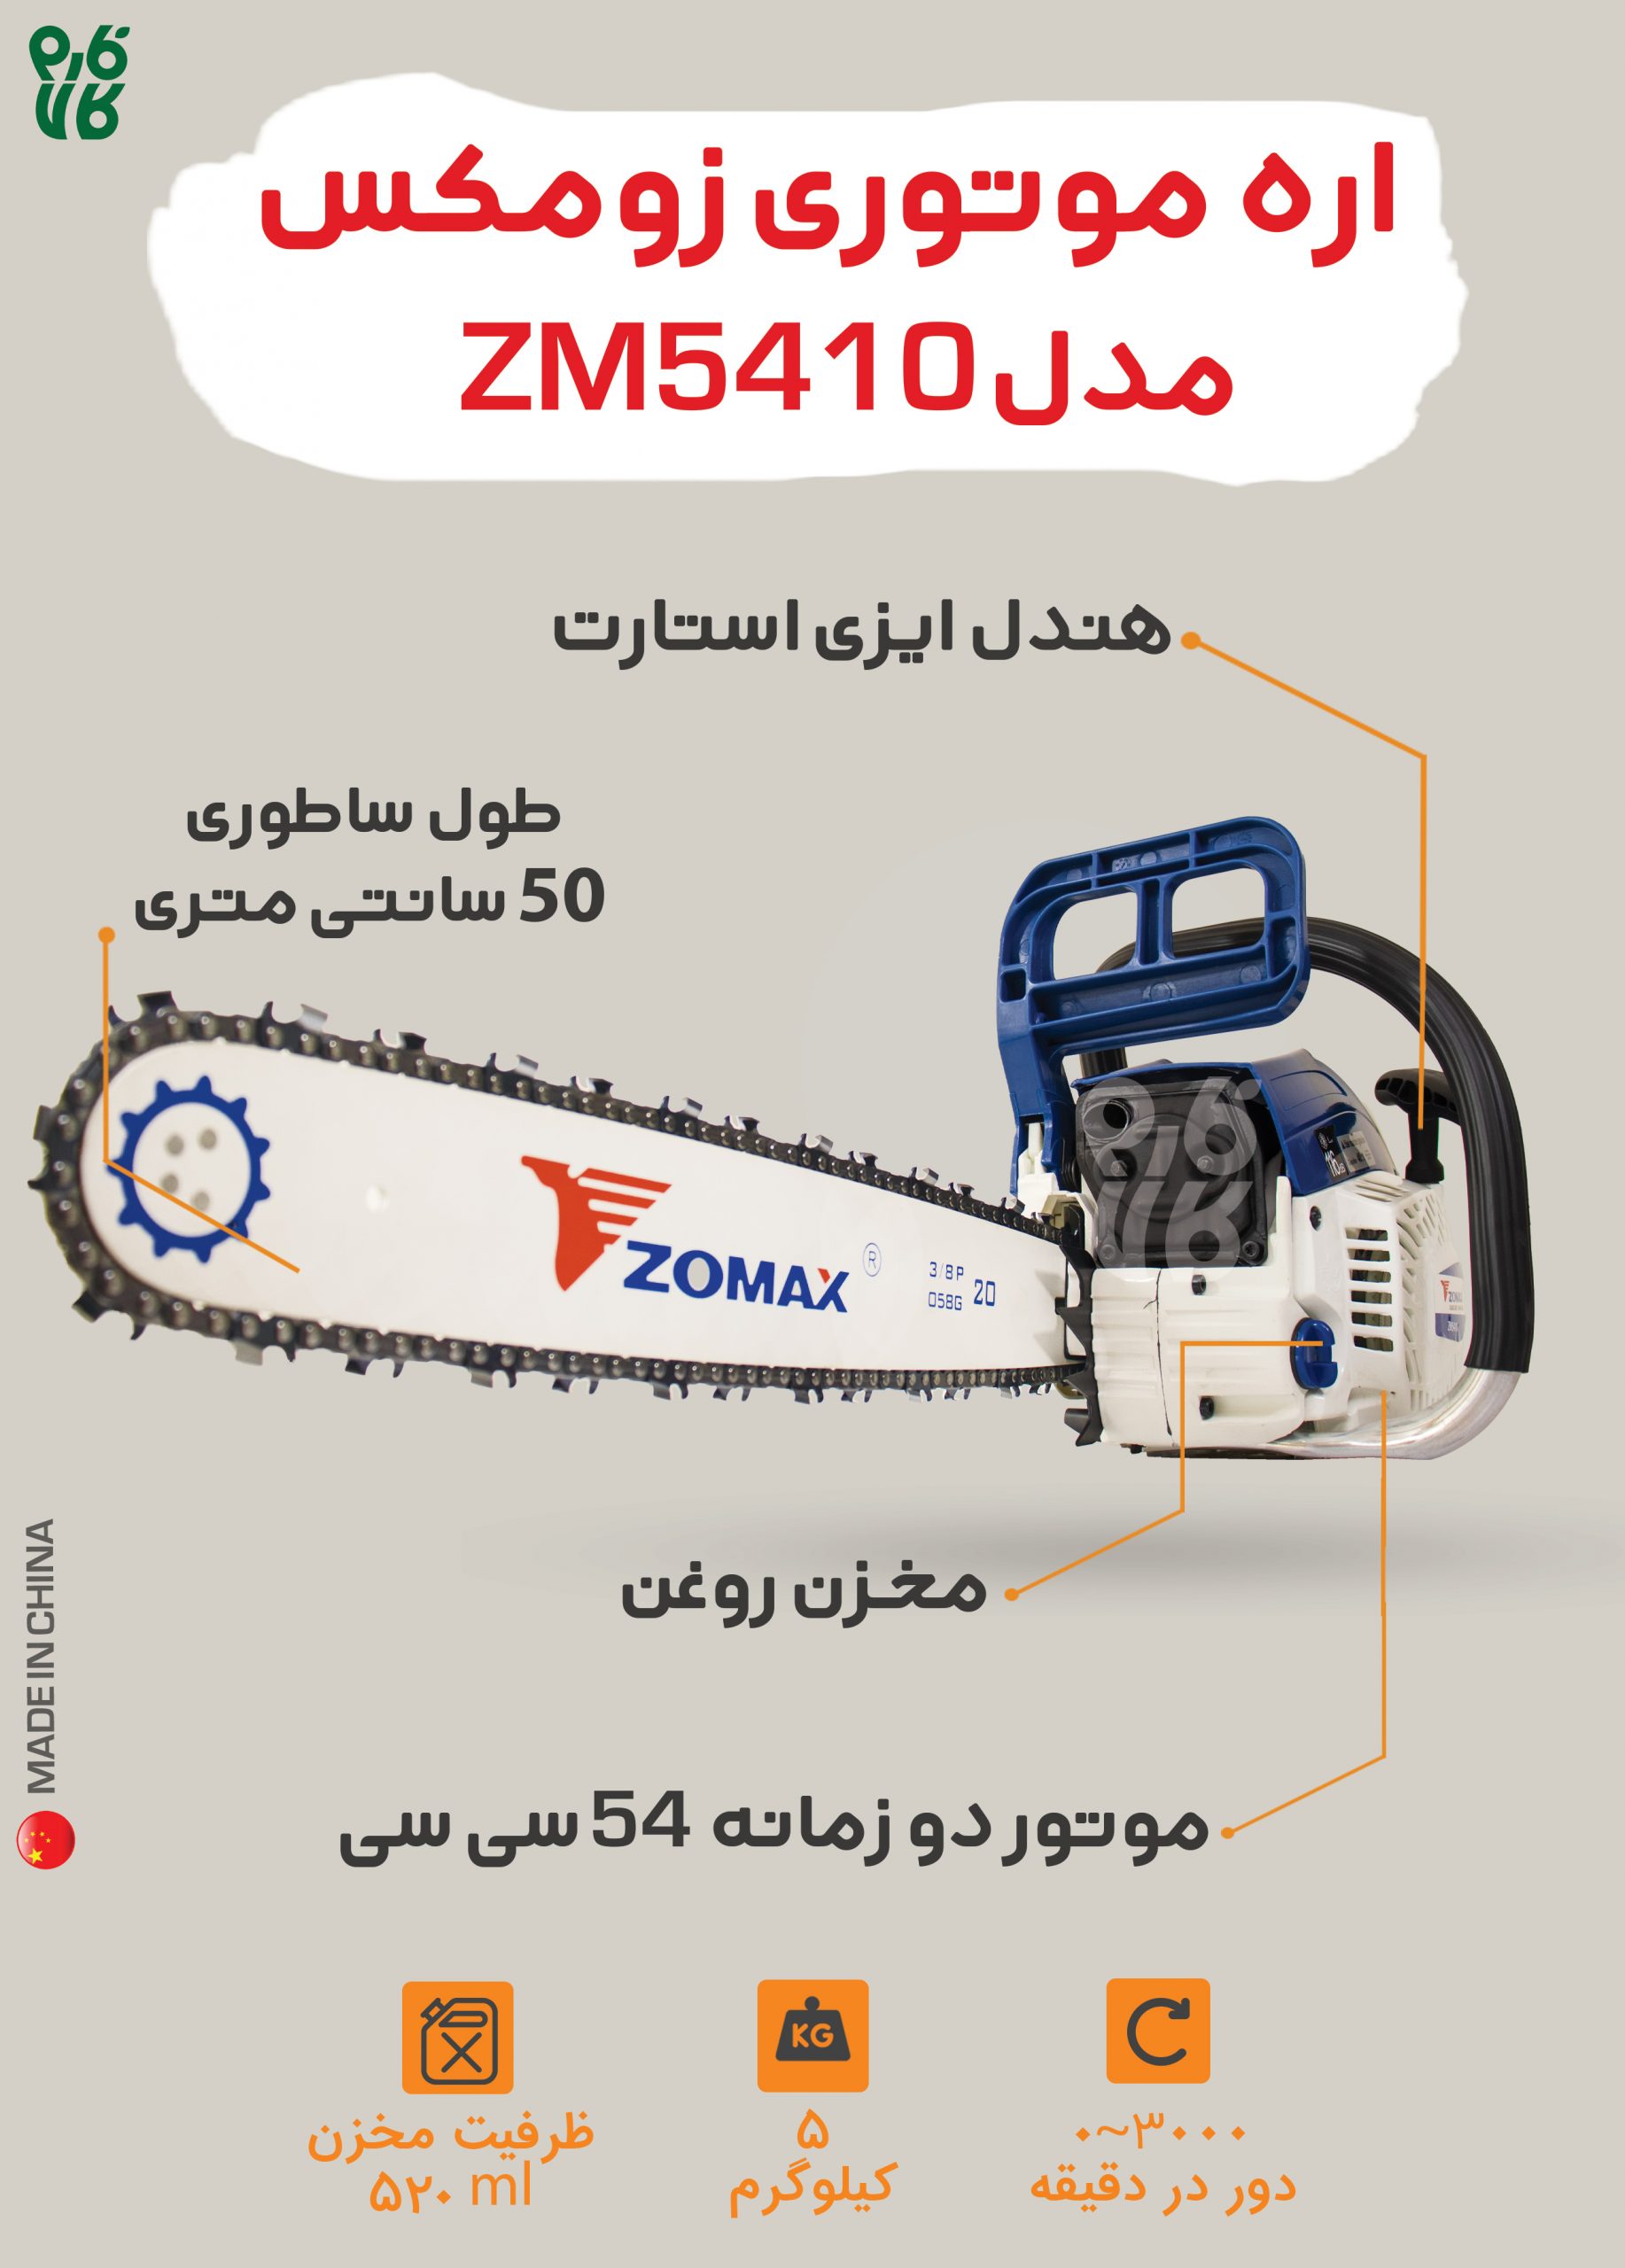 اره زنجیری بنزینی زومکس ZM5410 - قیمت اره موتوری - بهترین اره موتوری - قوی ترین اره موتوری - اره موتوری زوماکس - اره موتوری zomax - نمایندگی زوماکس - قوی ترین اره موتوری چینی - بهترین اره موتوری چینی